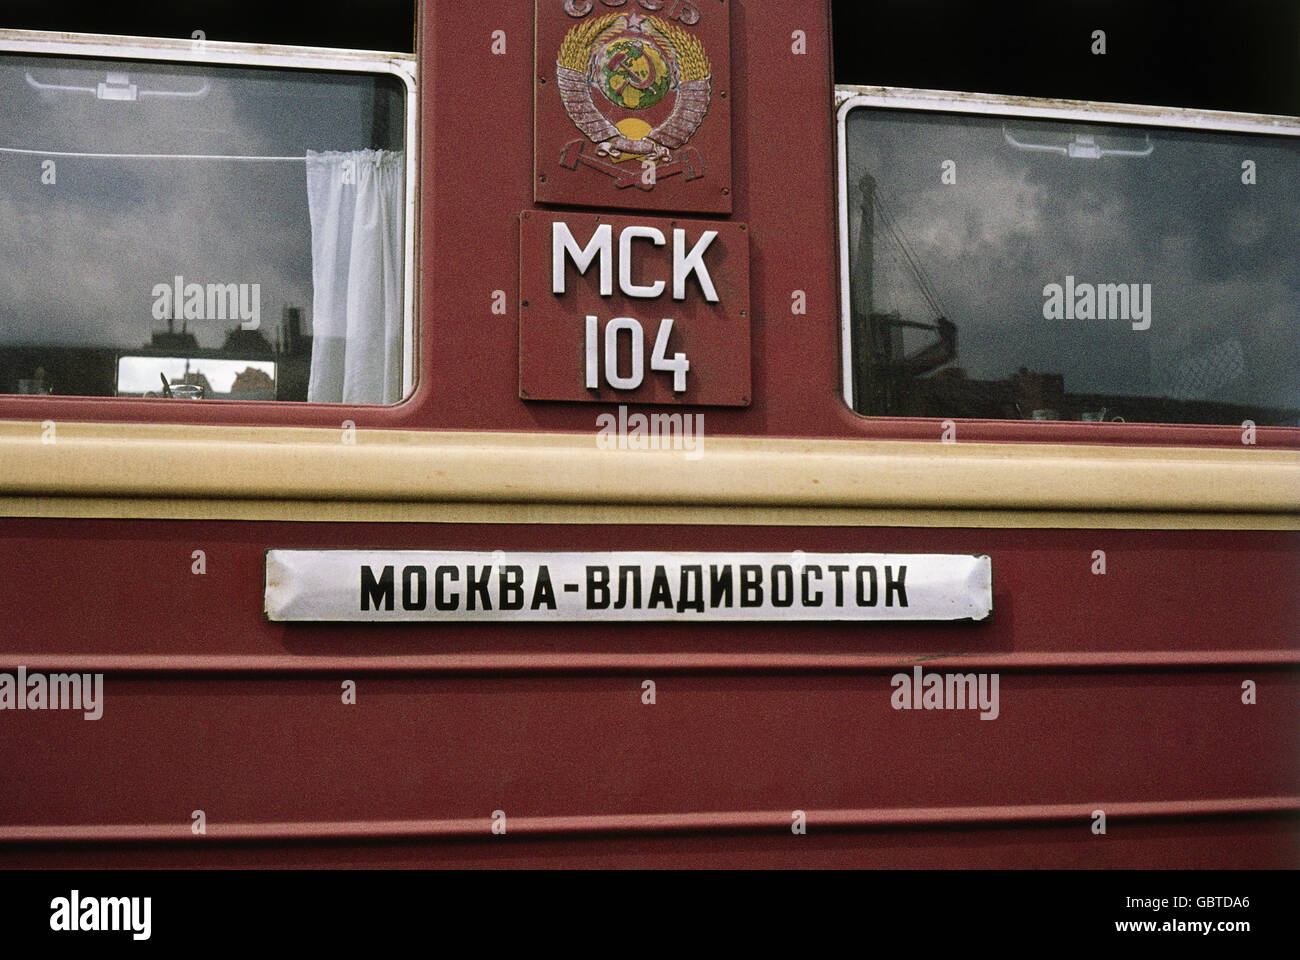 Geografía / viajes, Rusia, Siberia, transporte / transporte, Ferrocarril Transiberiano, transporte ferroviario con cartel: Moscú - Vladivostok, 1974, Derechos adicionales-Clearences-no disponible Foto de stock